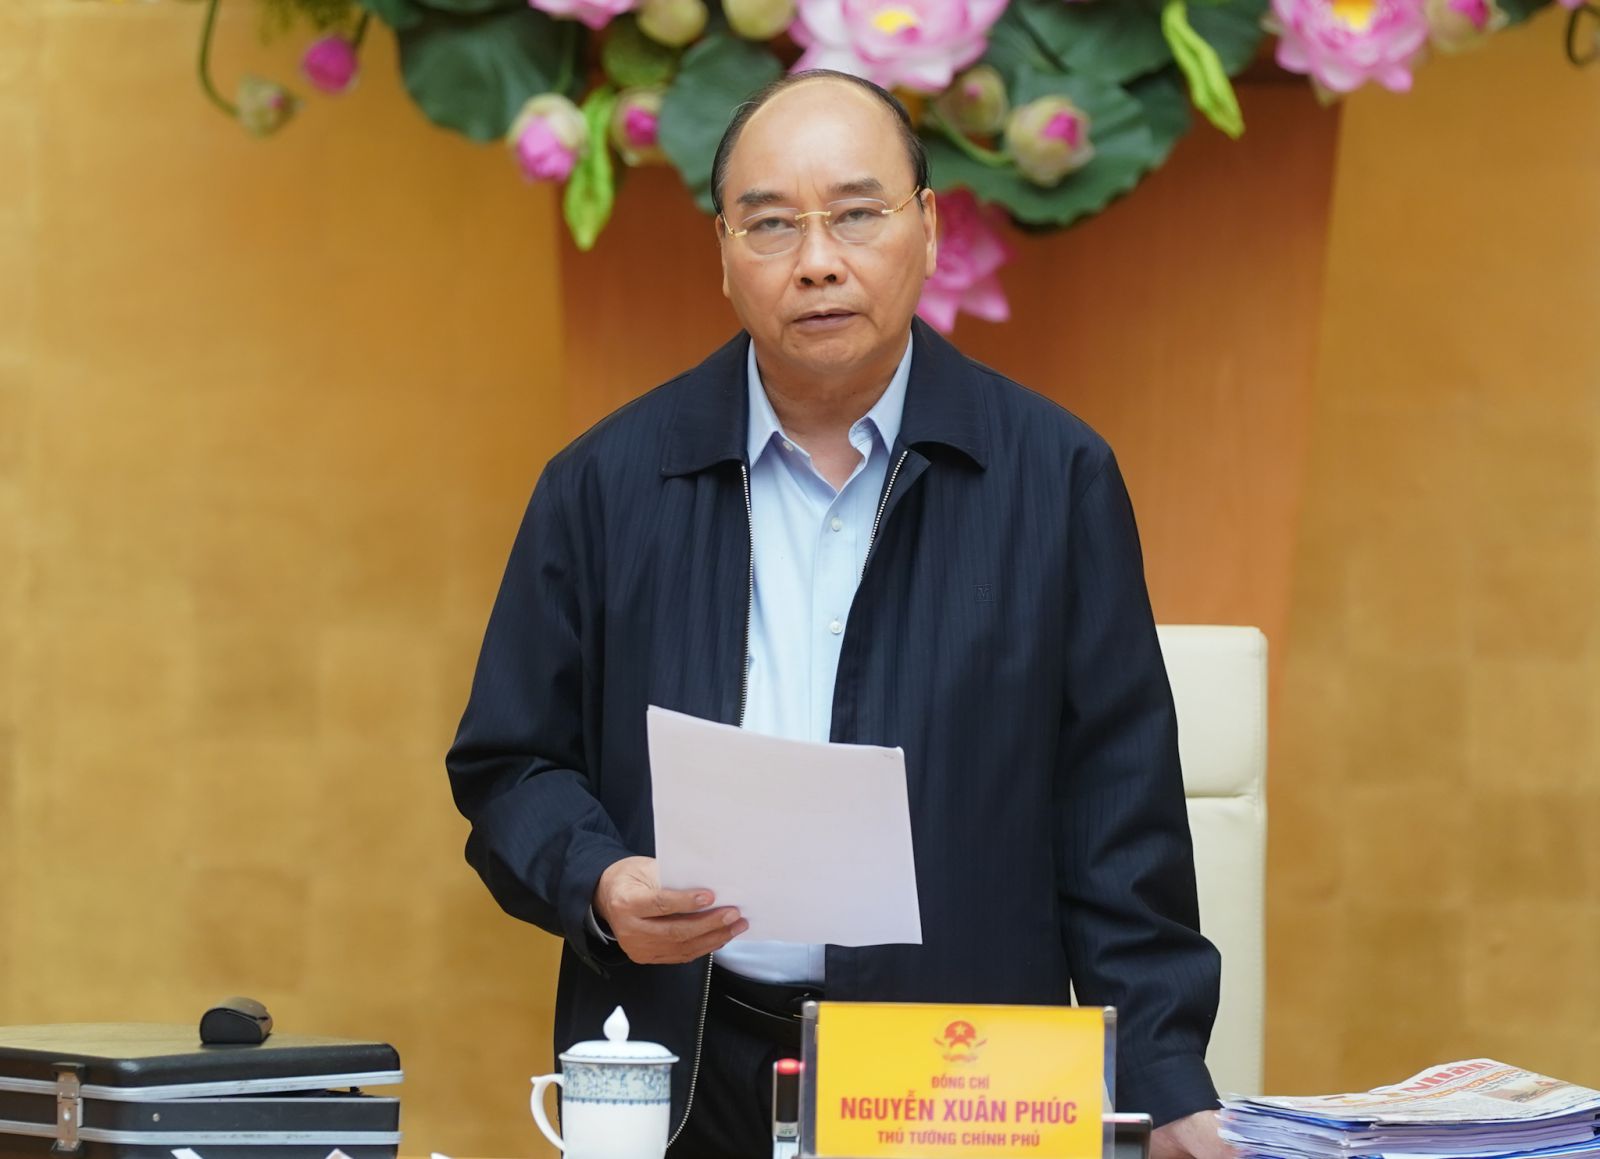  Thủ tướng khẳng định: “Chính phủ Việt Nam chủ động kiểm soát mọi tình hình”.